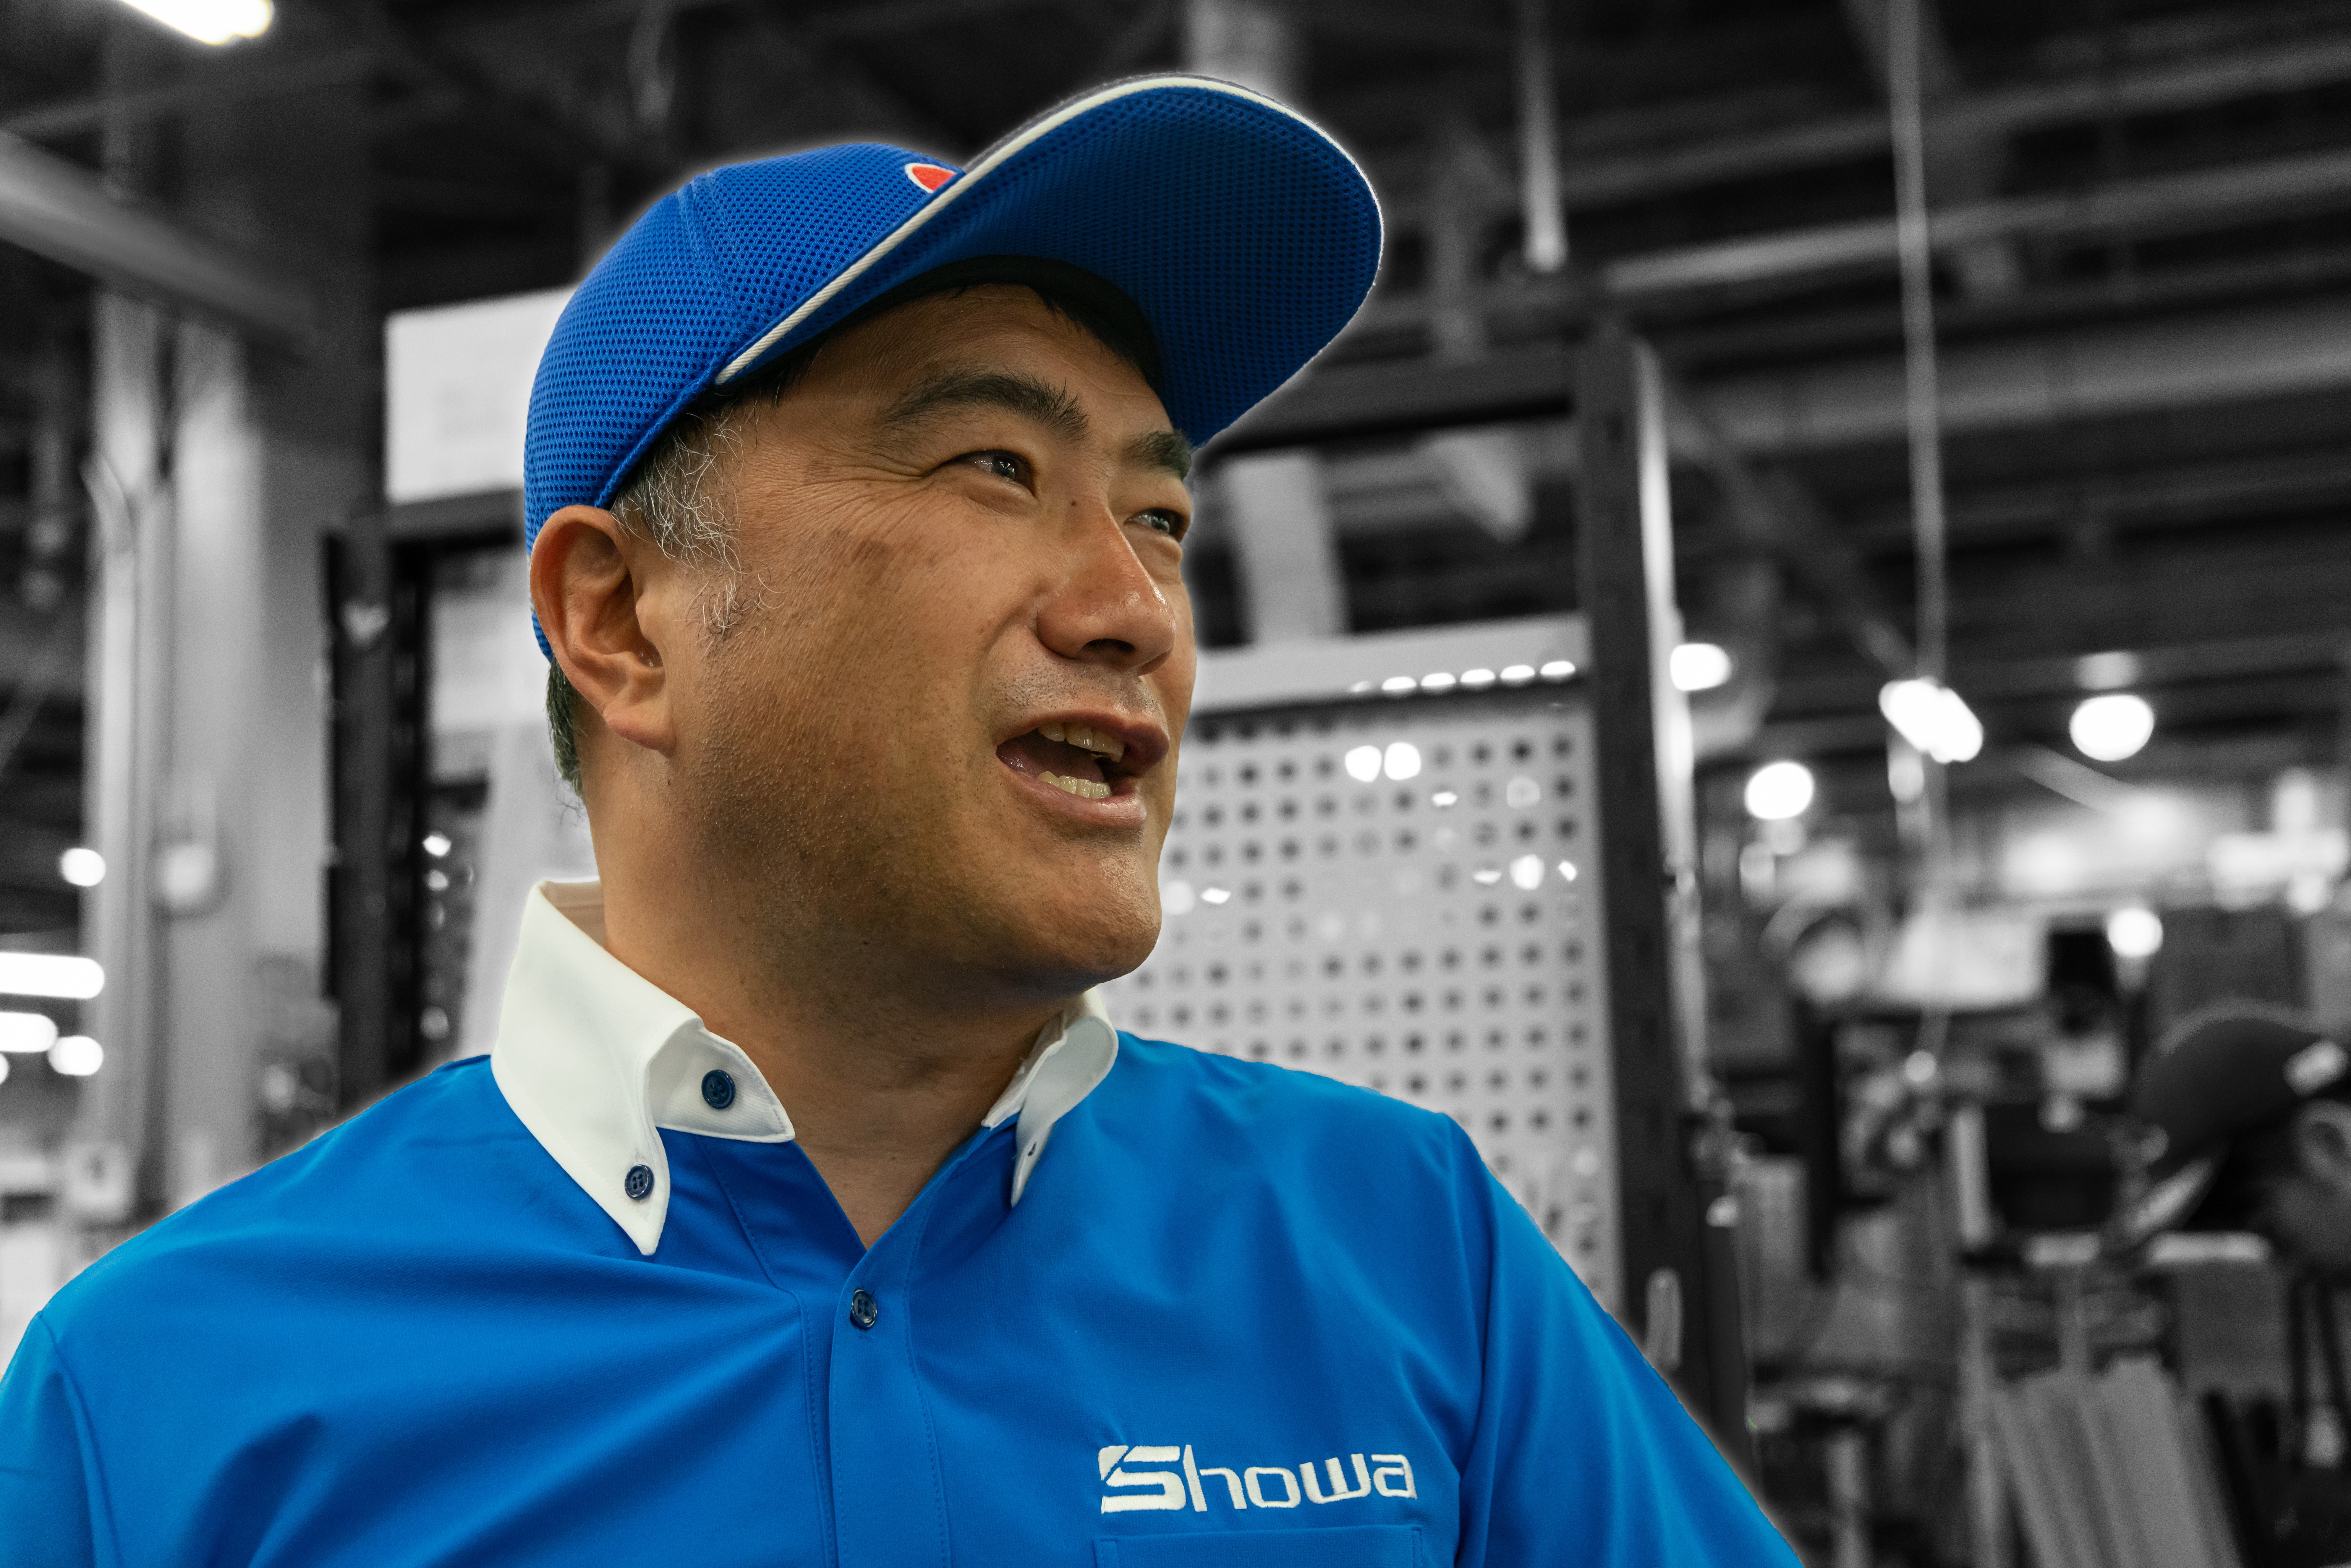 Kensaku Kashiwagi, CEO